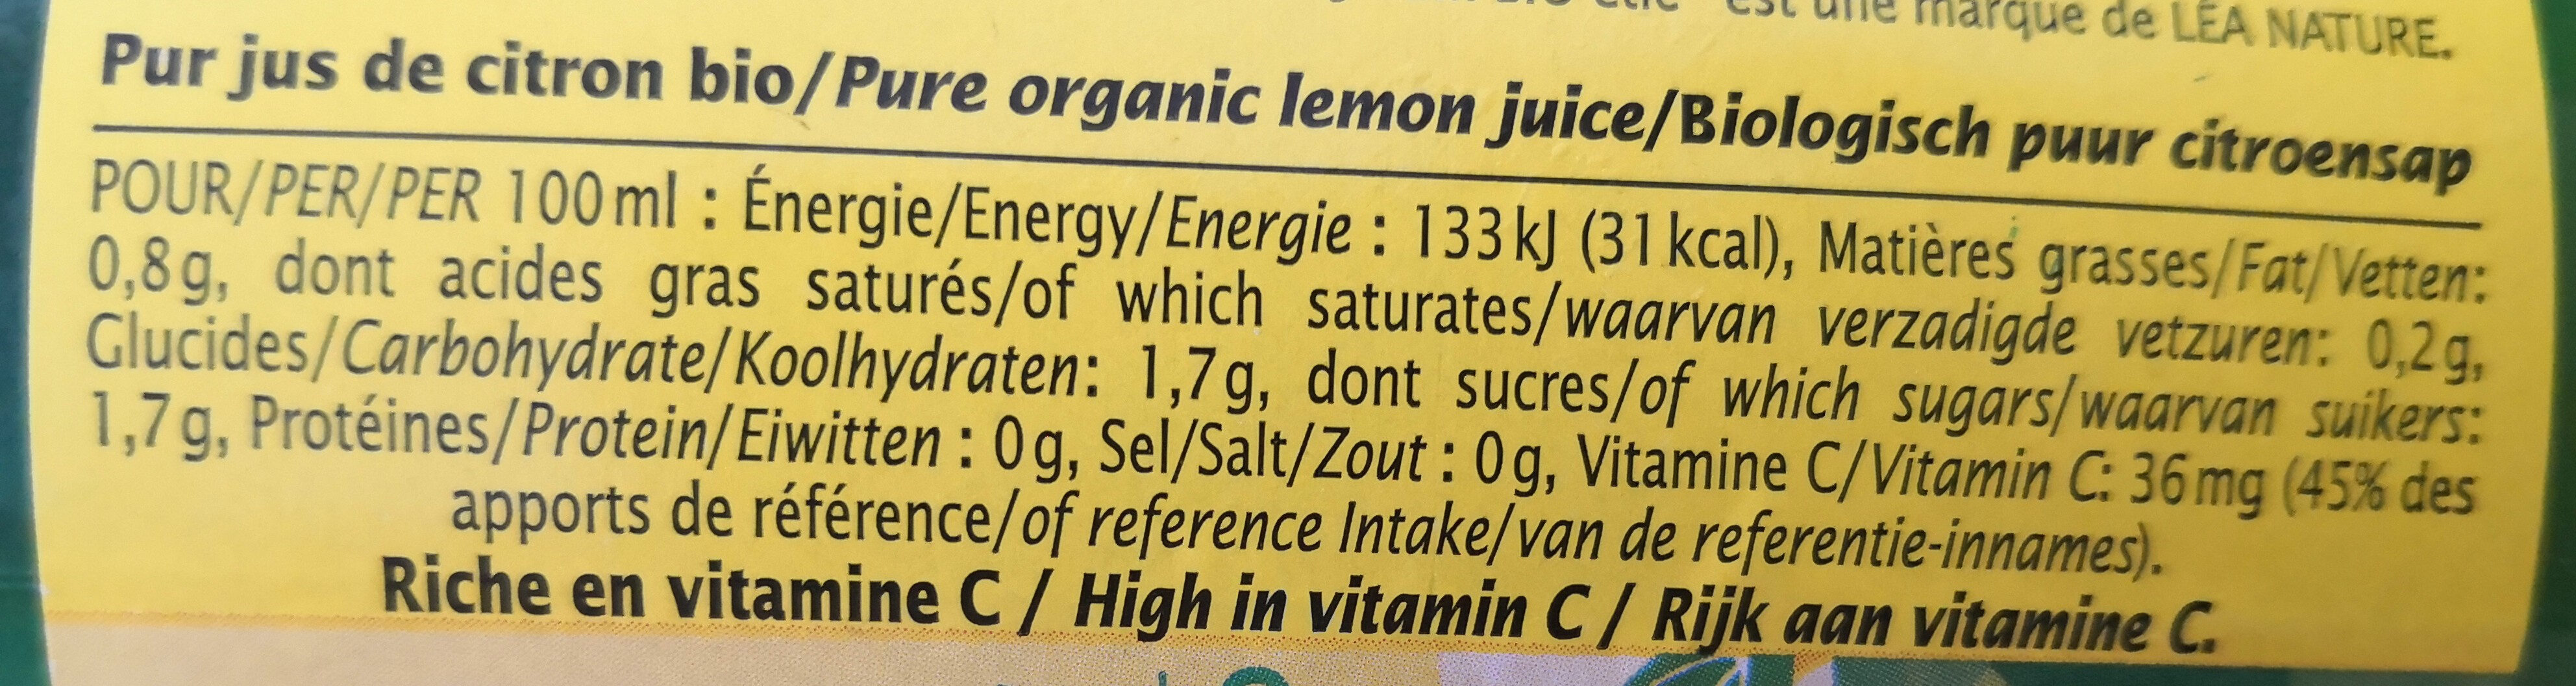 Pur jus de citron bio - Ingredients - fr